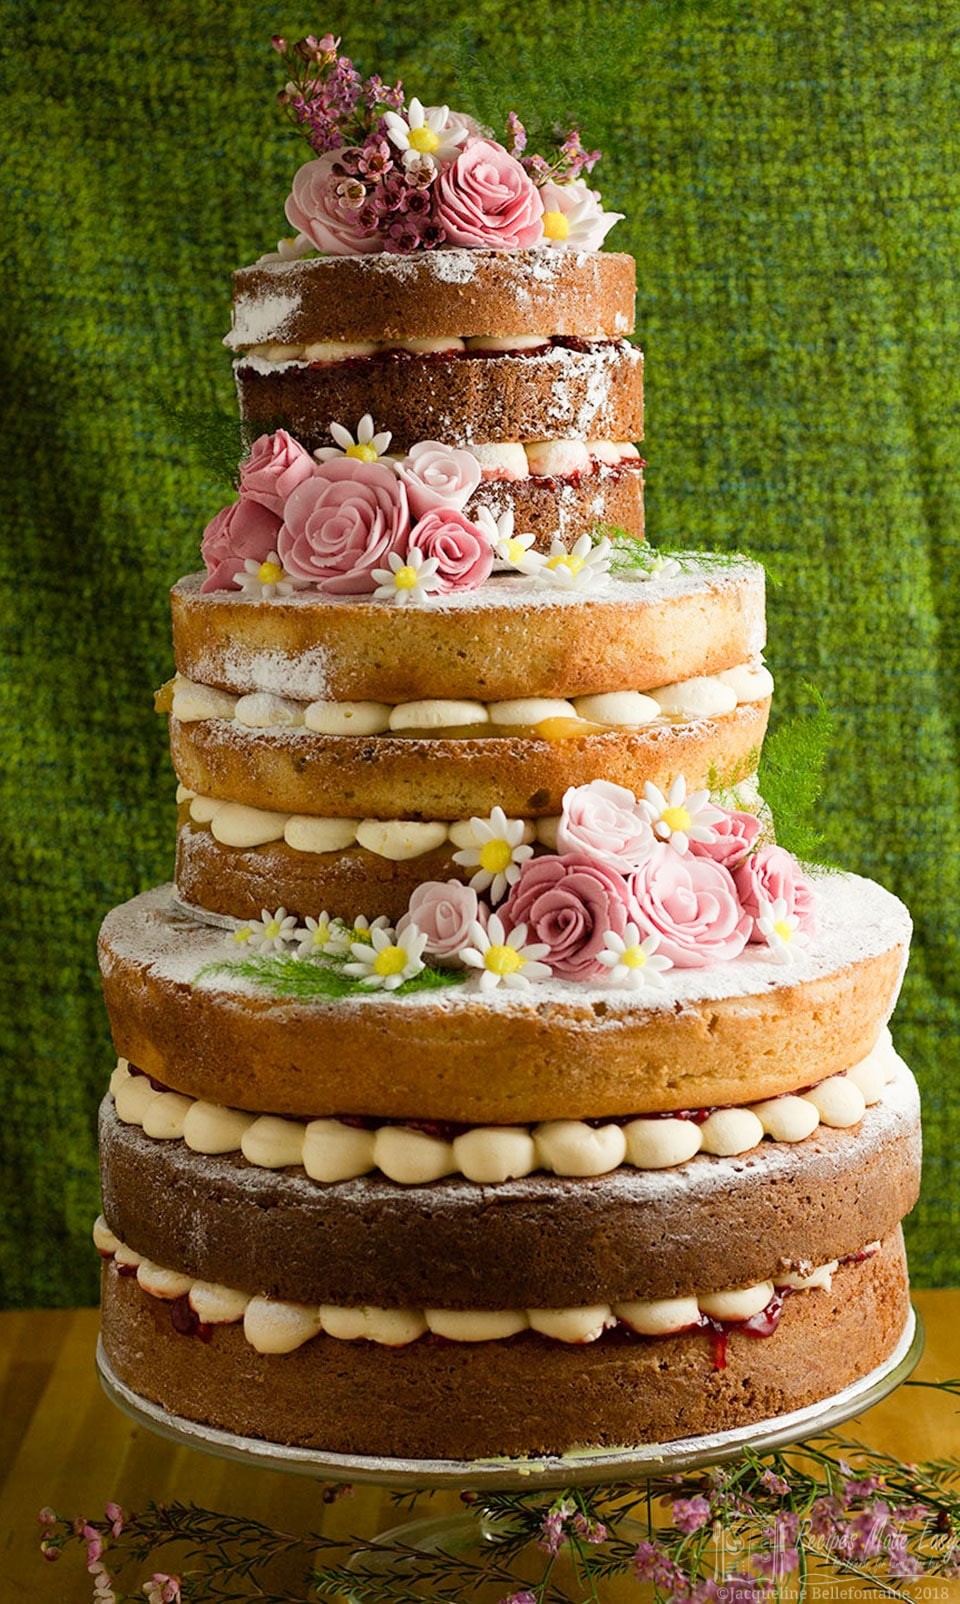 Six Naked Wedding Cake Ideas